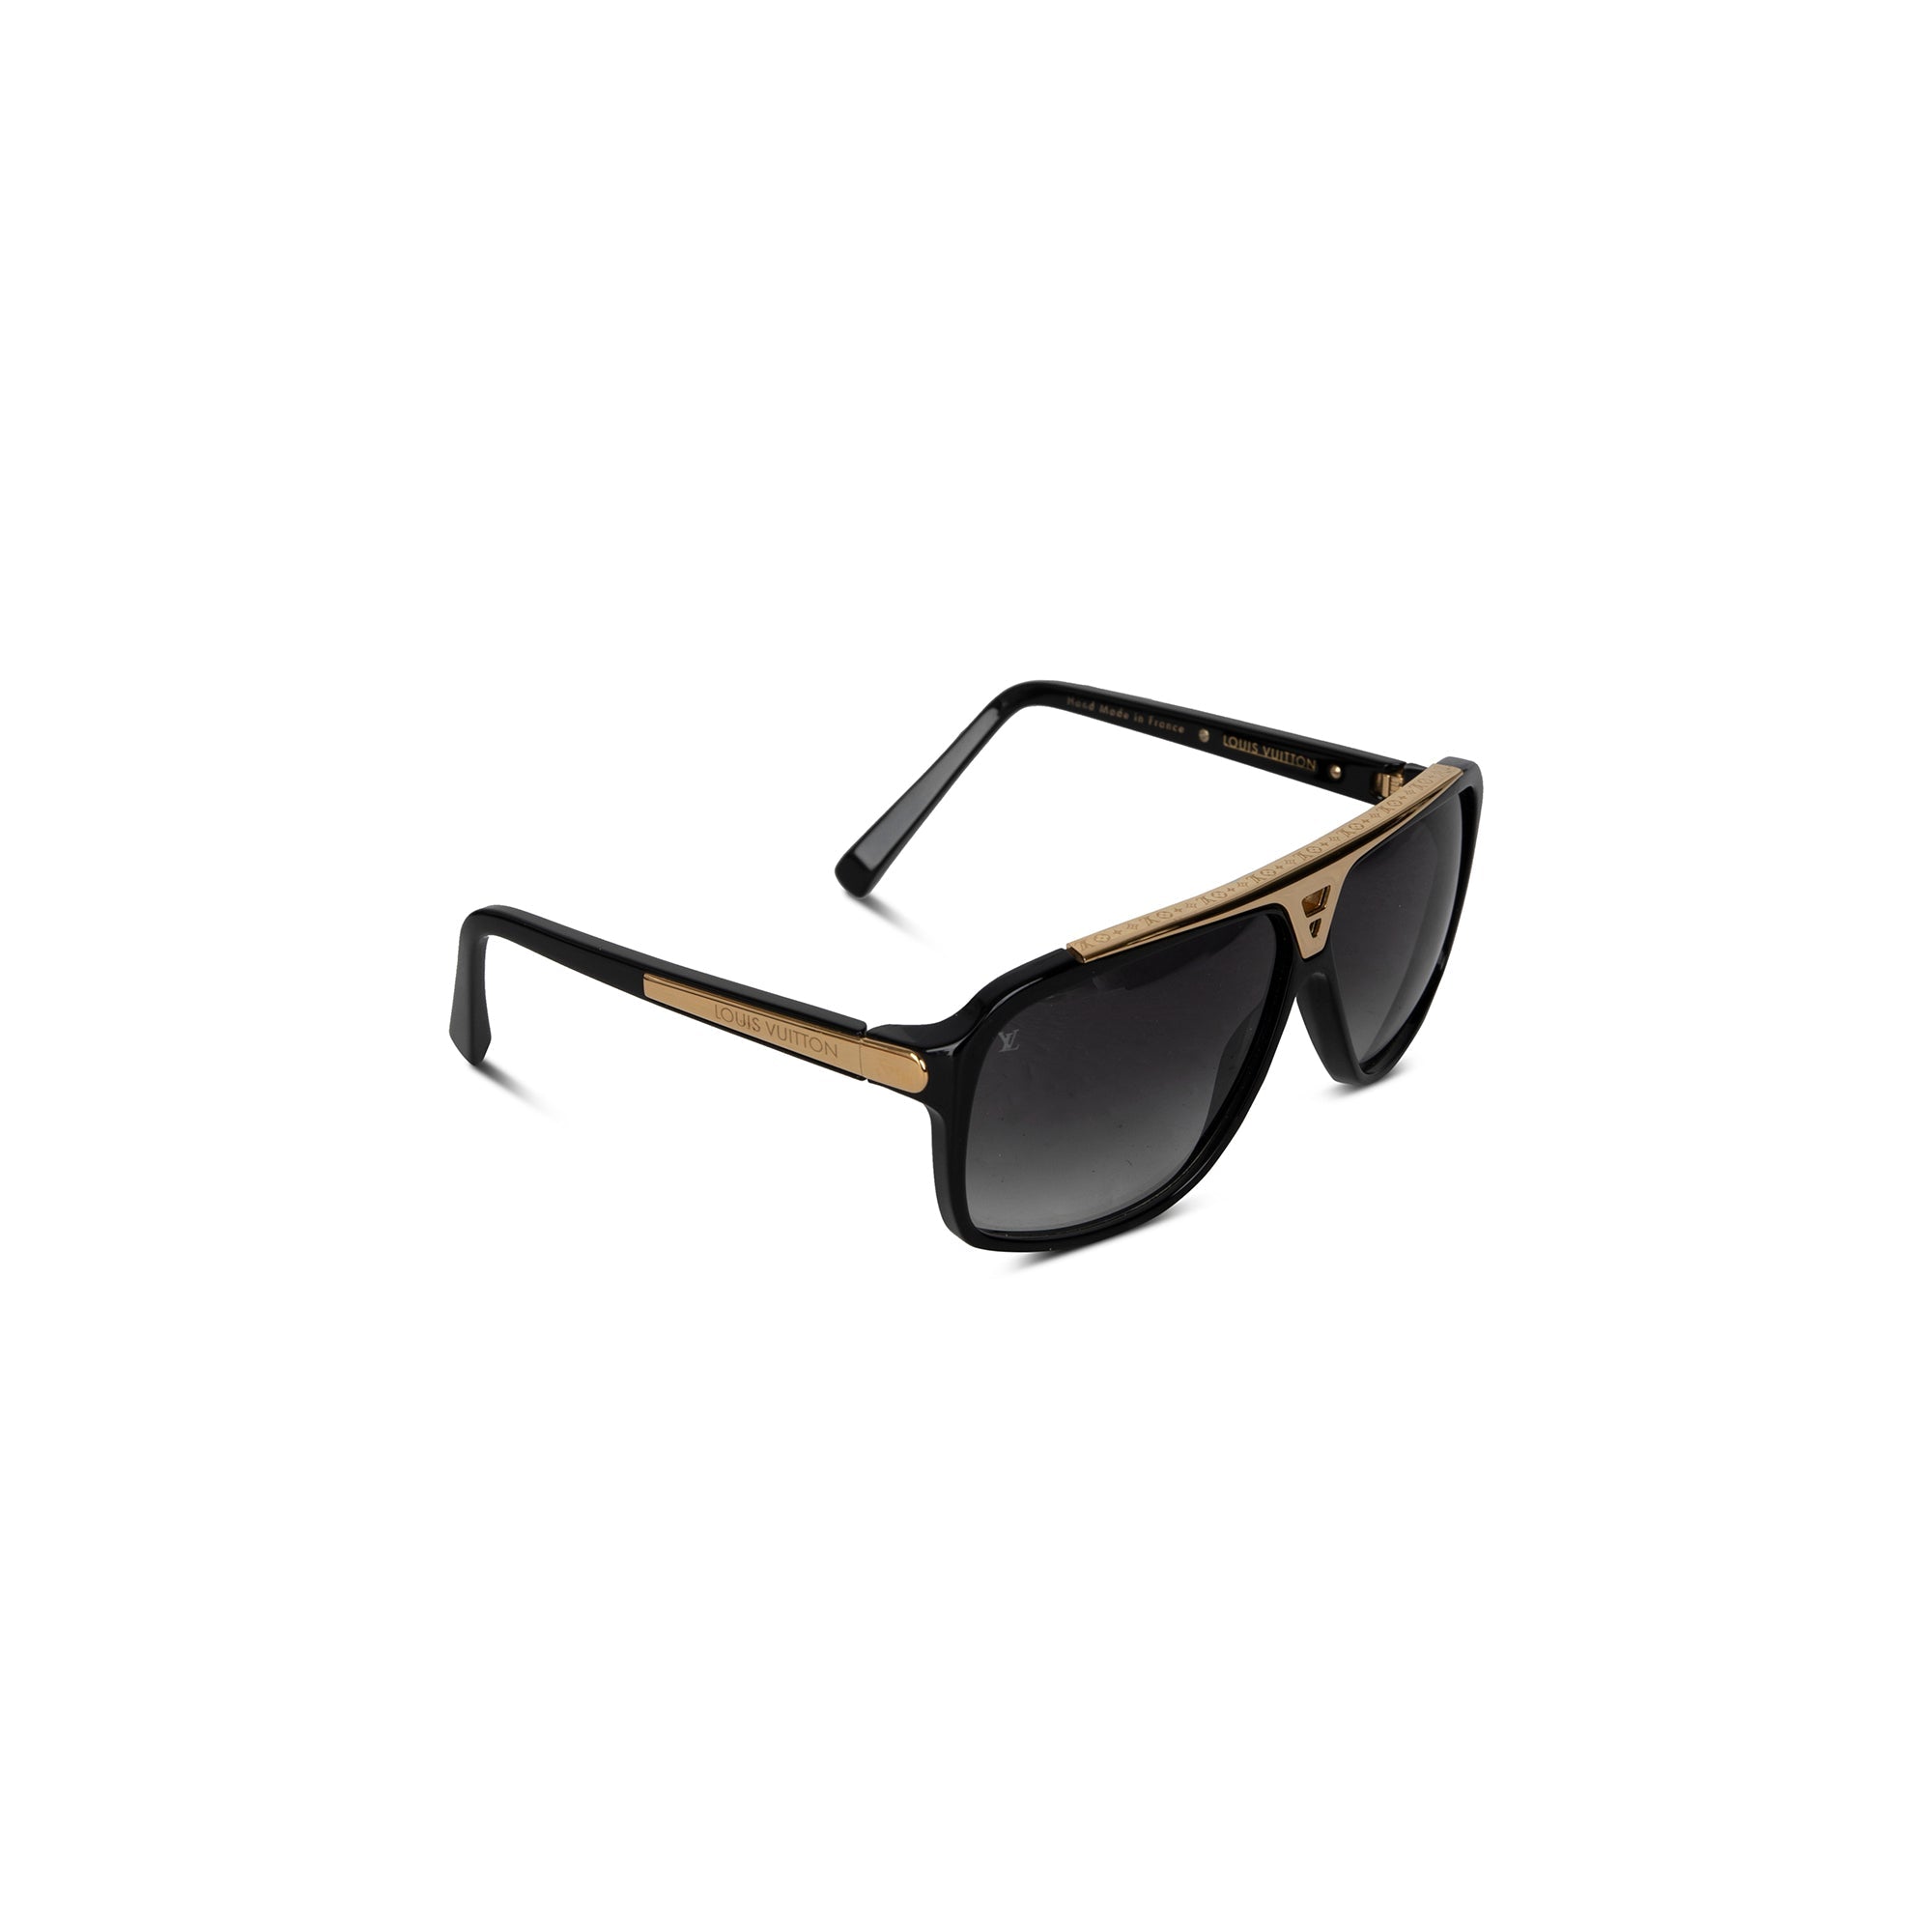 AUTHENTIC Louis Vuitton Black Z0350W Evidence Square Sunglasses